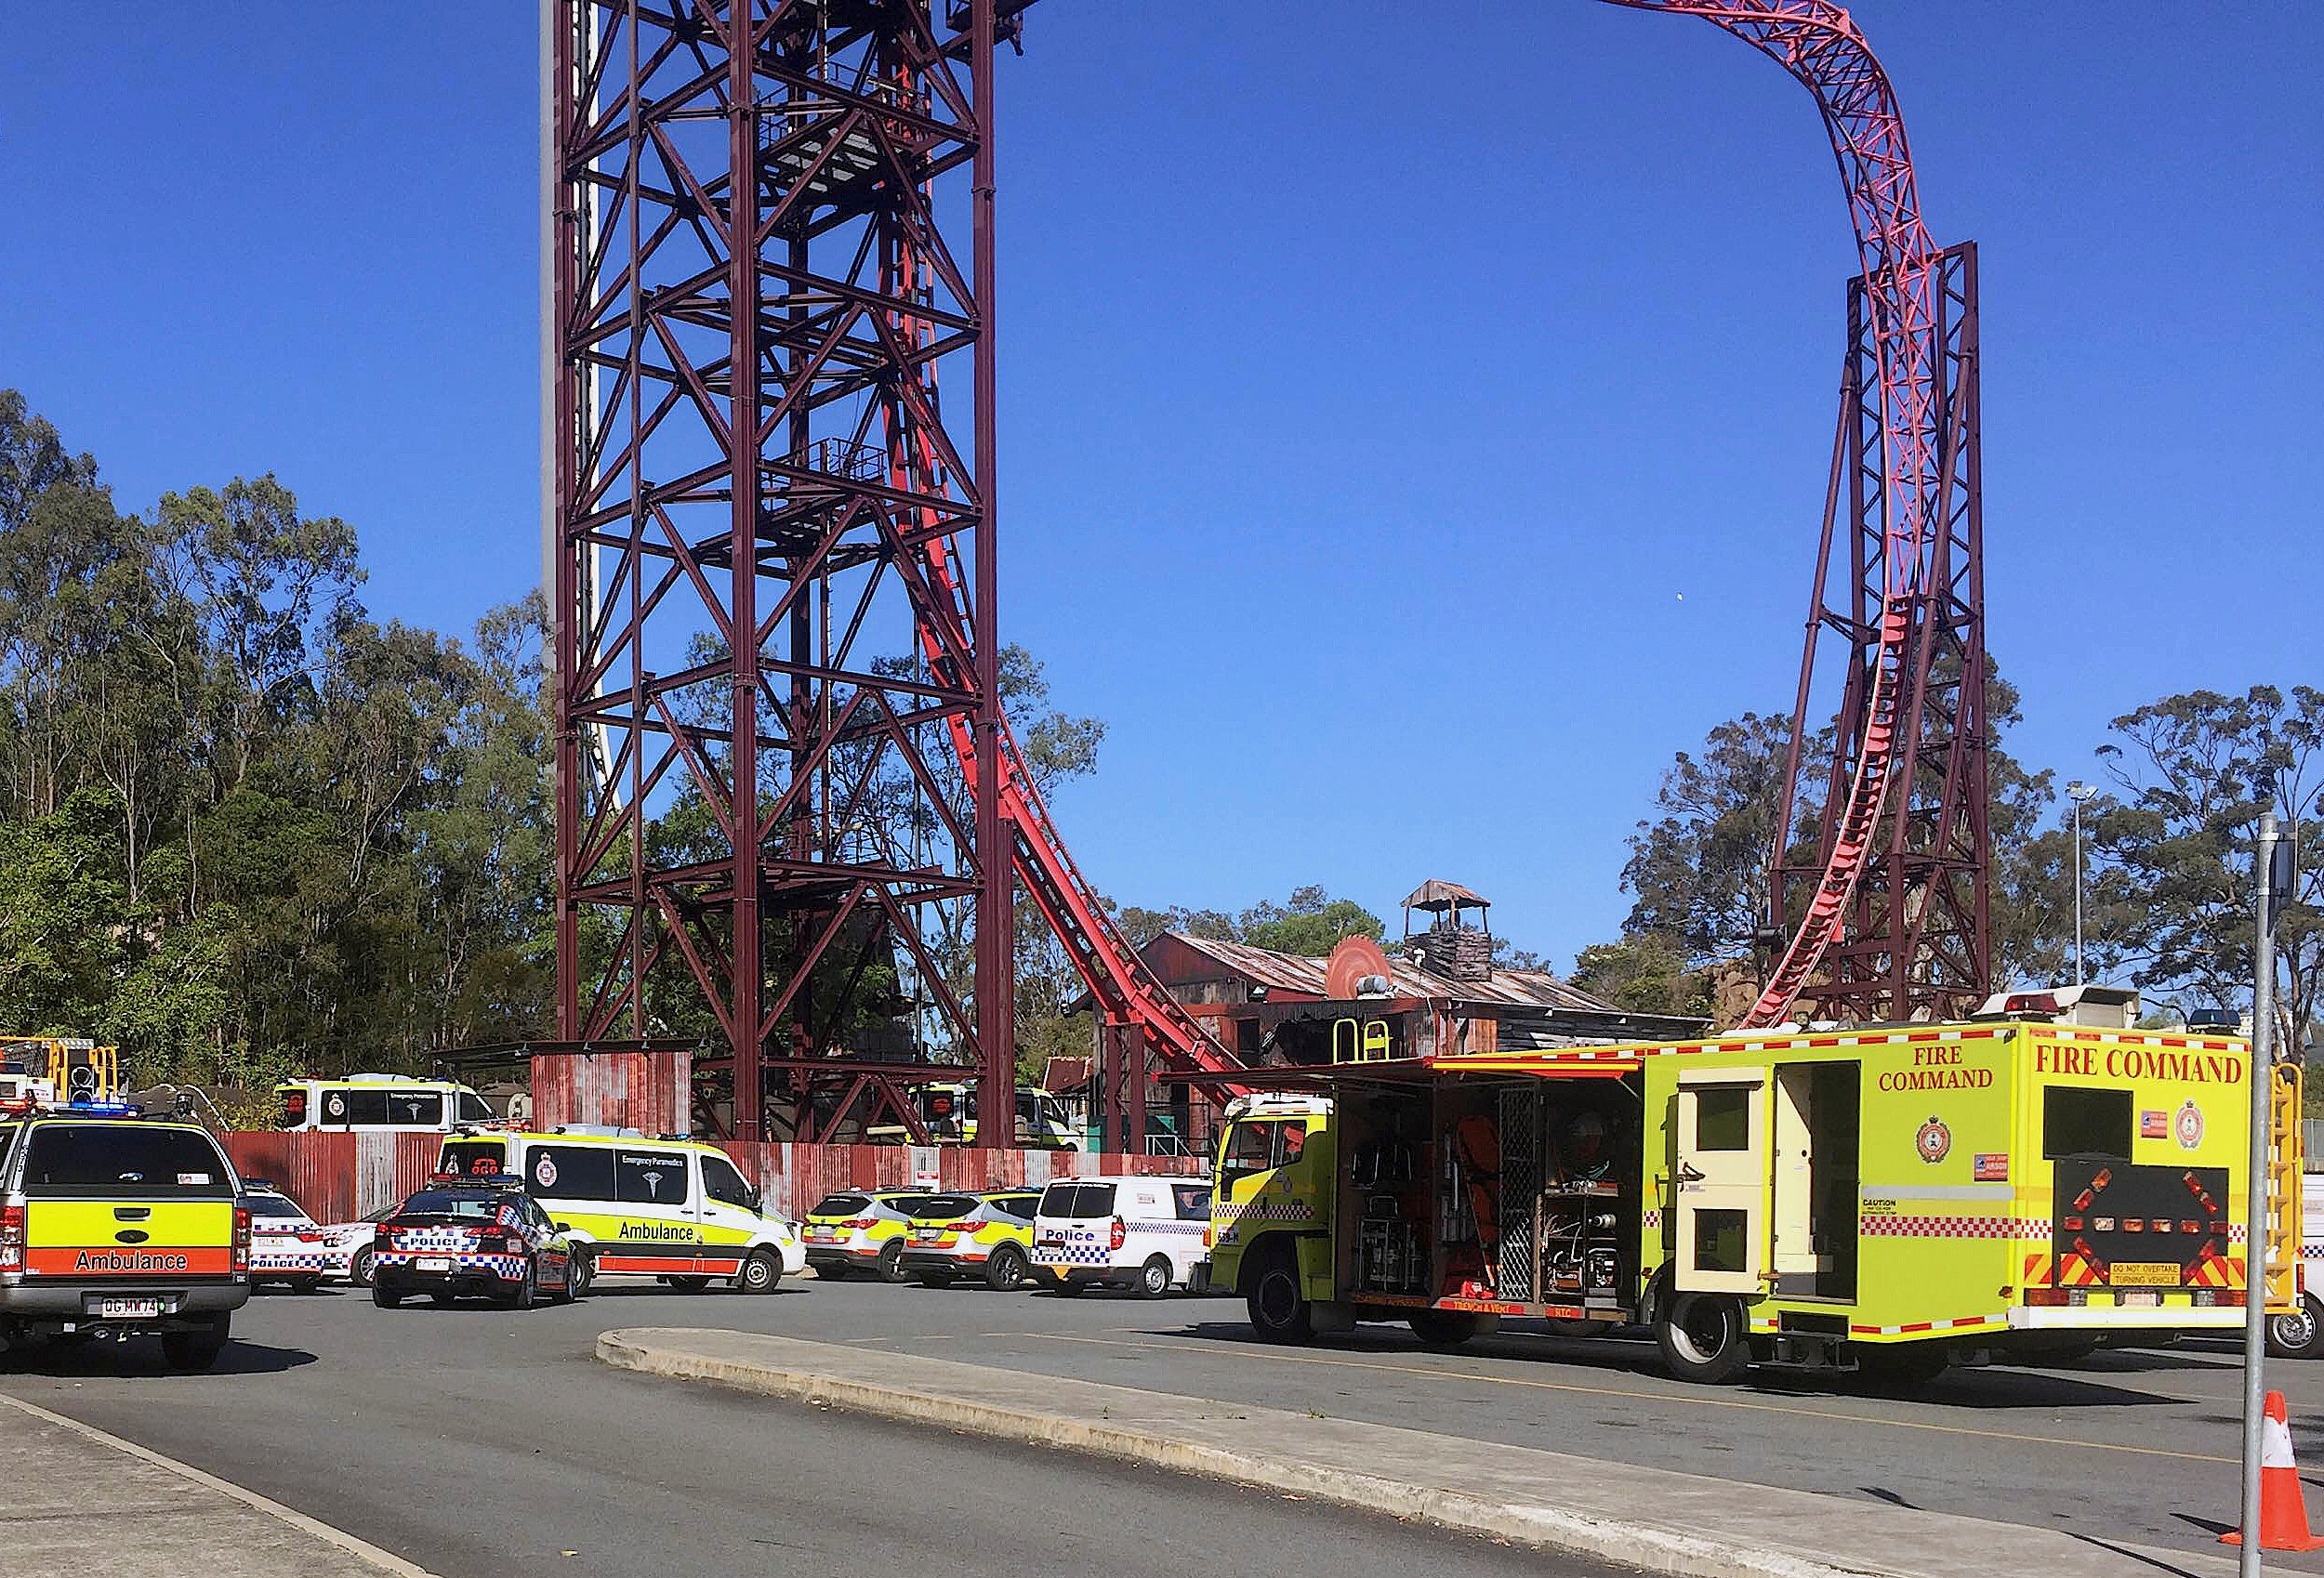 Τραγικό δυστύχημα σε θεματικό πάρκο στην Αυστραλία – 4 νεκροί